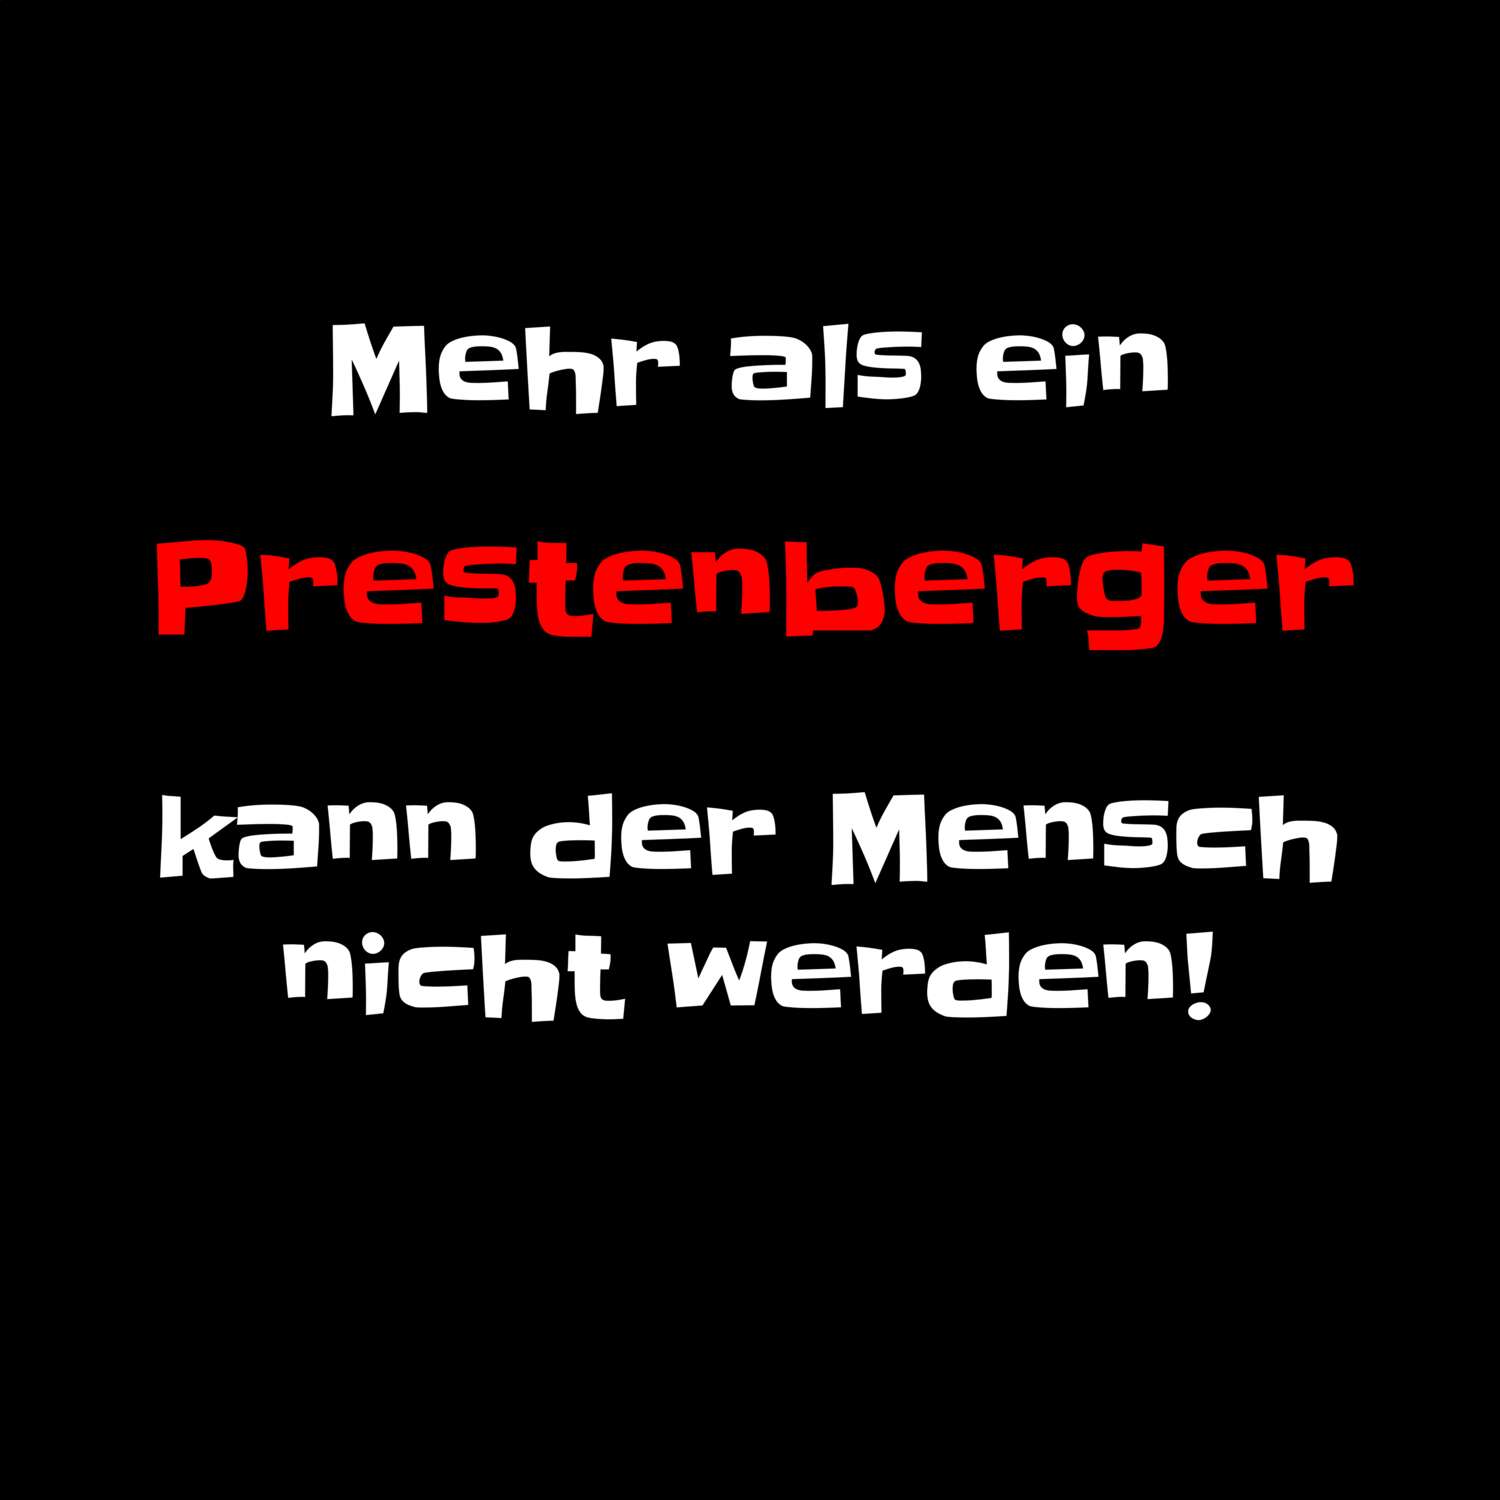 Prestenberg T-Shirt »Mehr als ein«